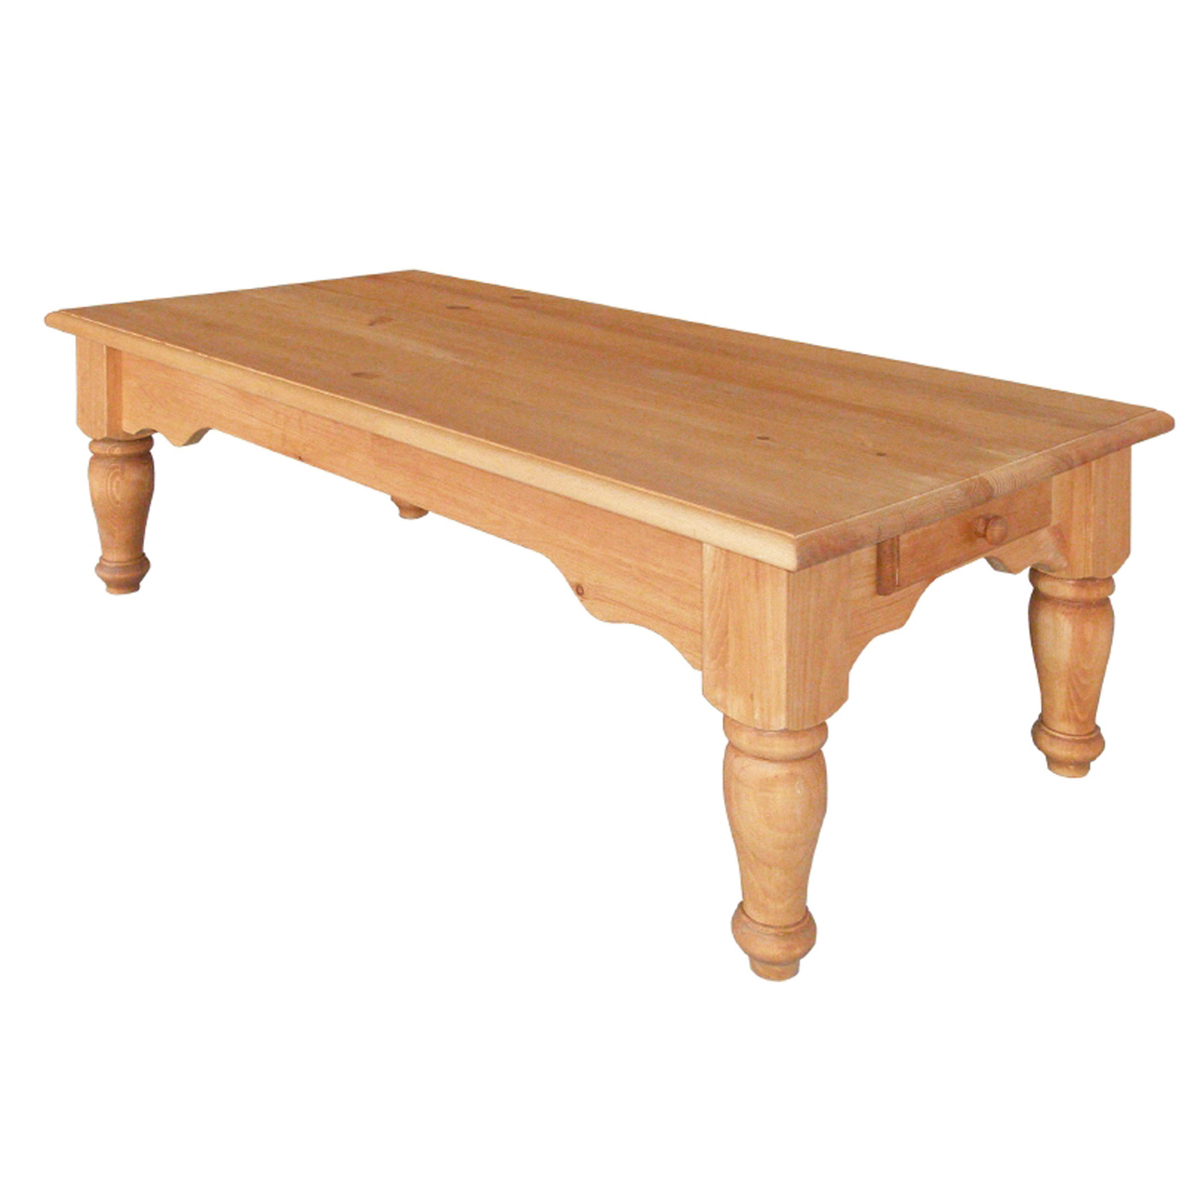 【カントリーナチュラルパイン家具】 Pine Furniture ローテーブル A308　オイル塗装